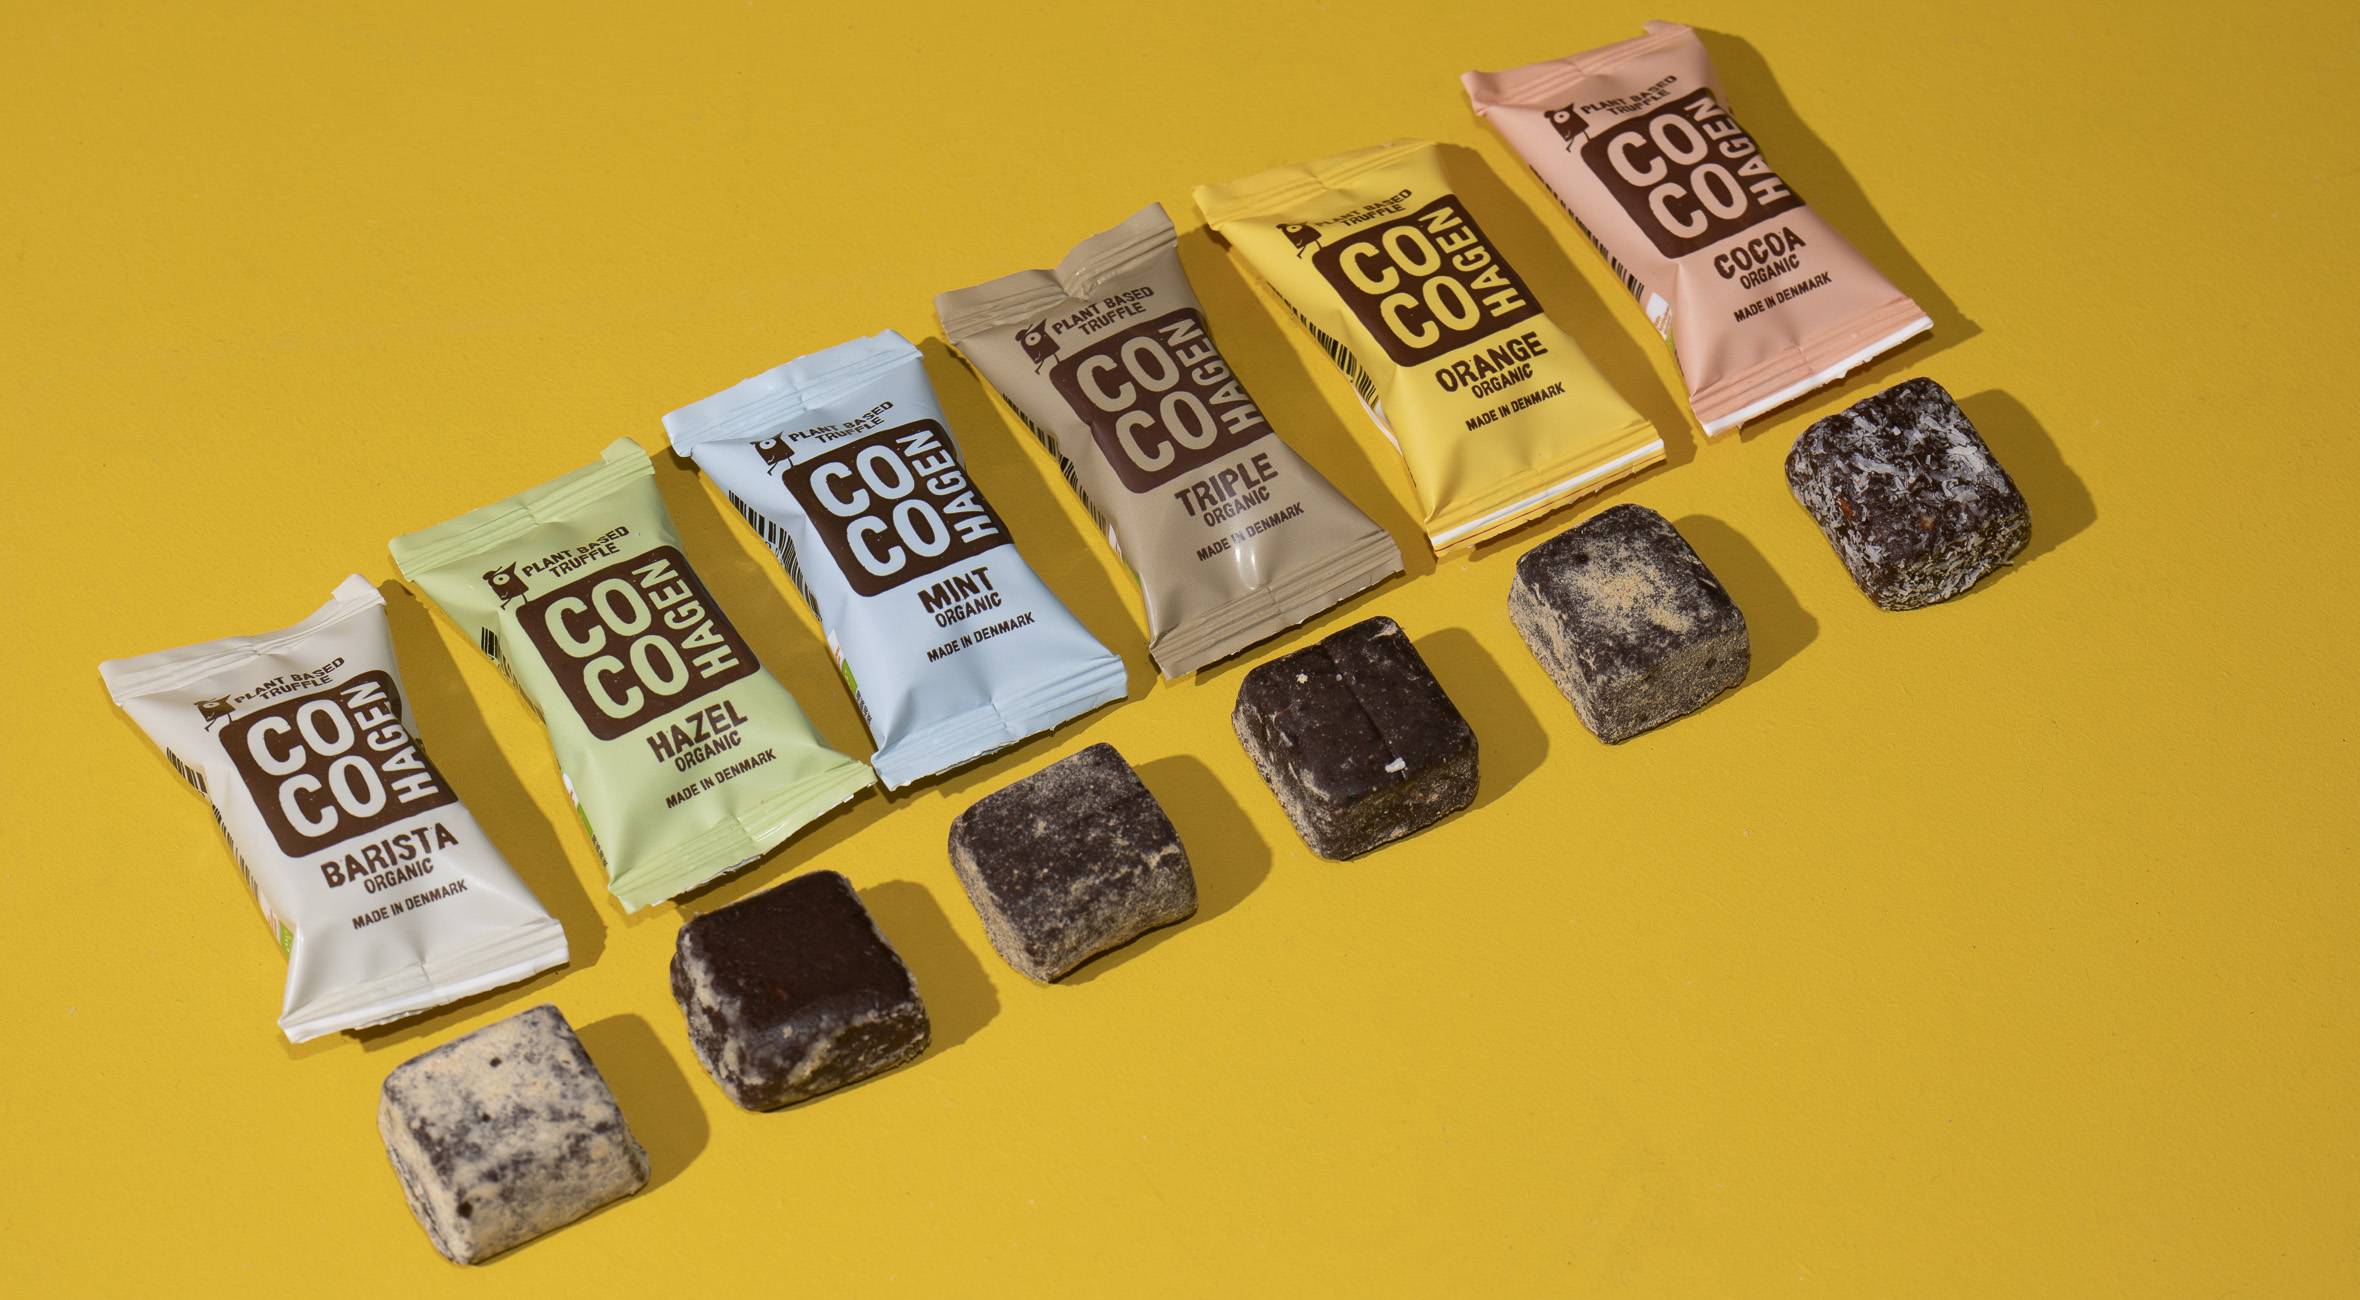 Frit valg til alt i COCOHAGENs webshop – Hypet startup eksporterer plantebaserede kakaotrøfler til Paris, New York og LA! Du får gratis levering til pakkeshop